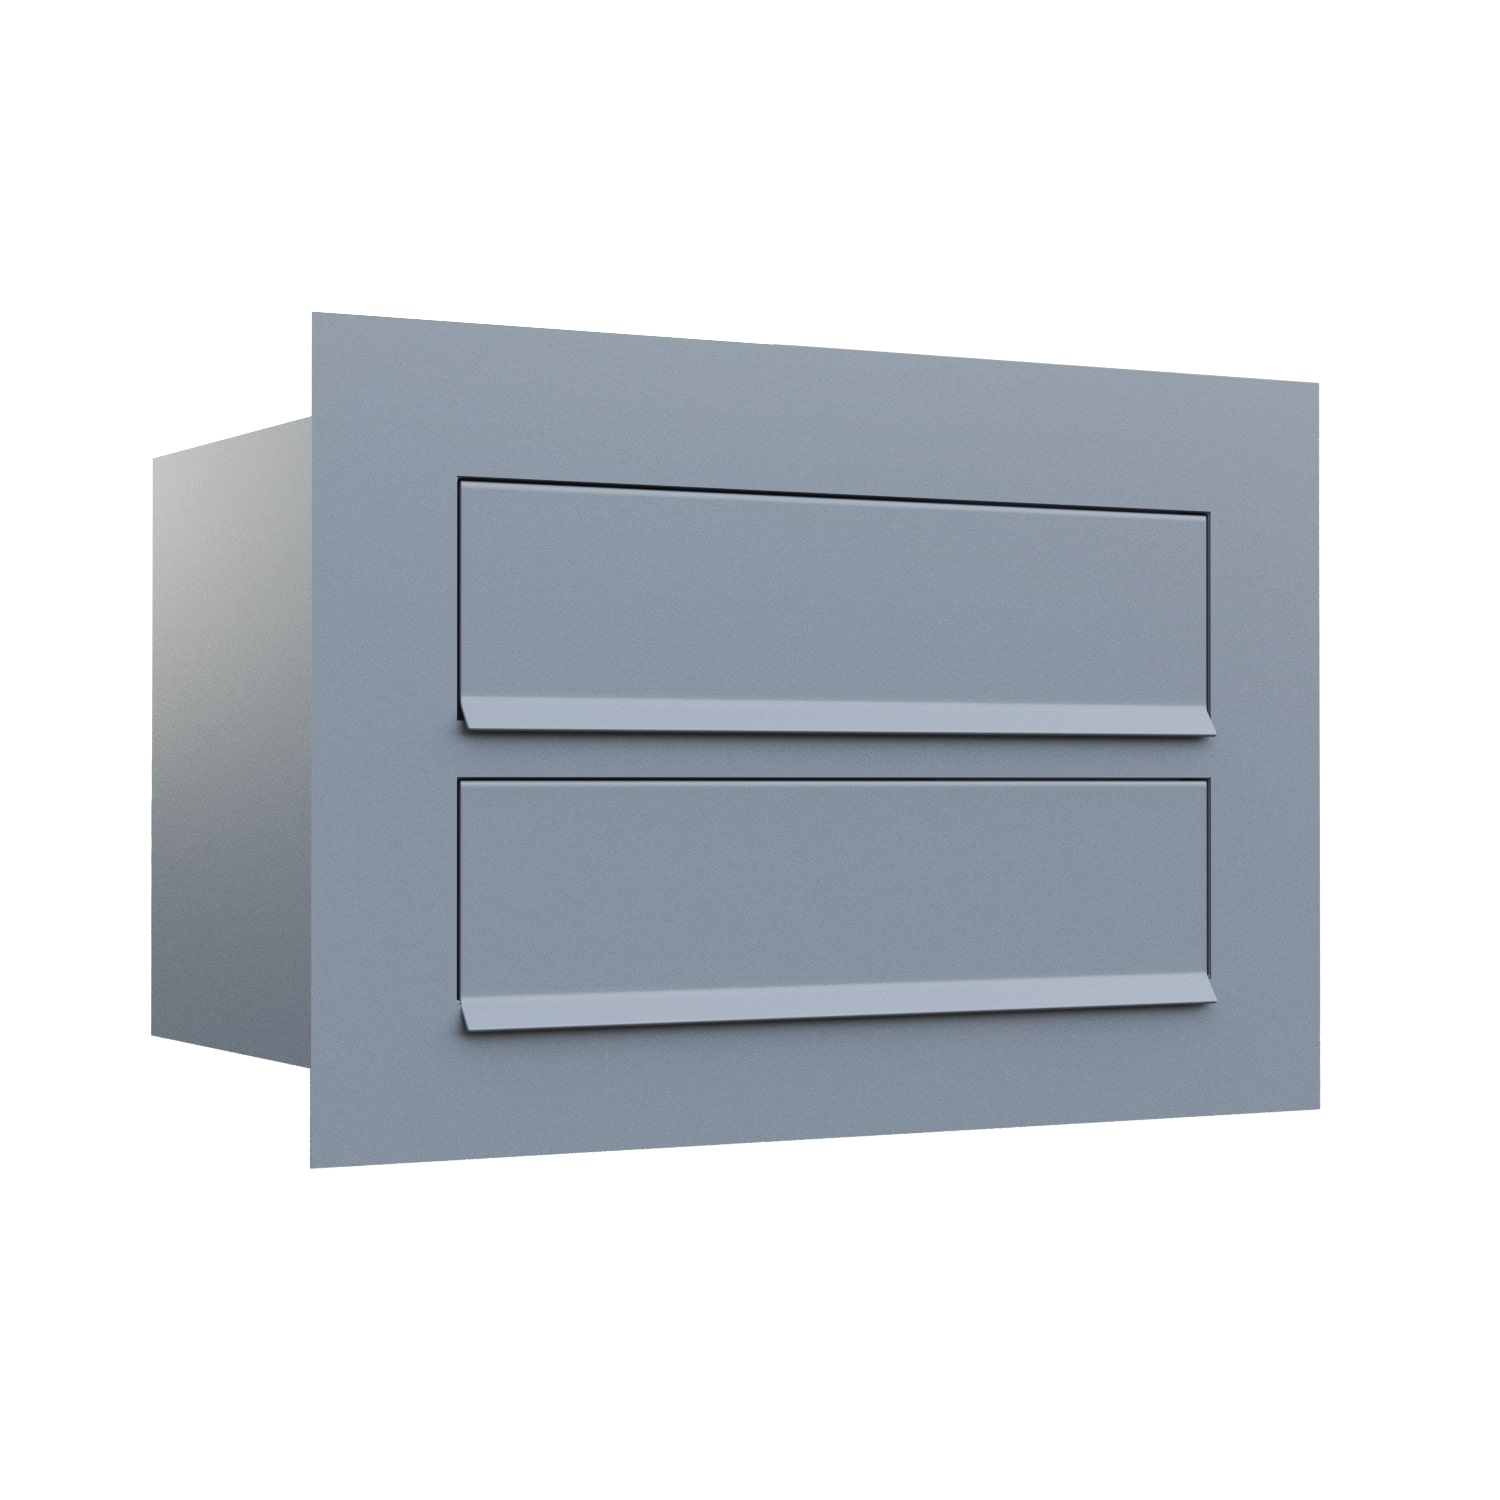 Wbudowana skrzynka pocztowa Como for Two w kolorze szary metalik